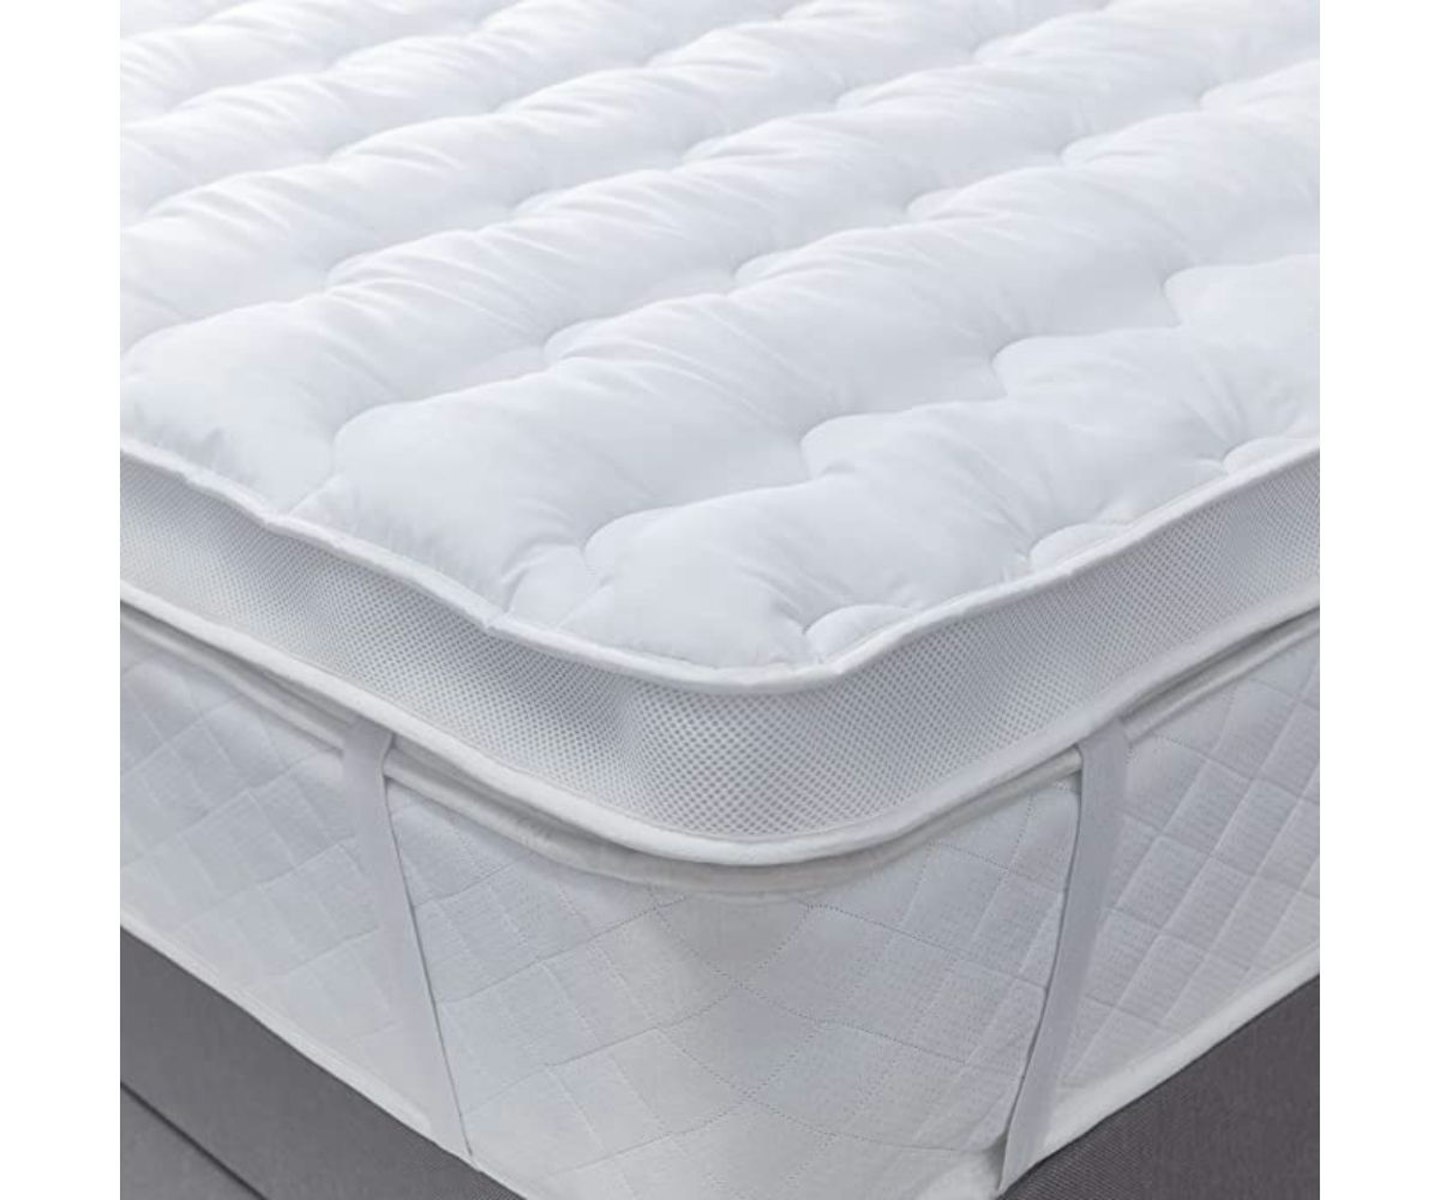 silentnight airmax 600 mattress topper kingsize